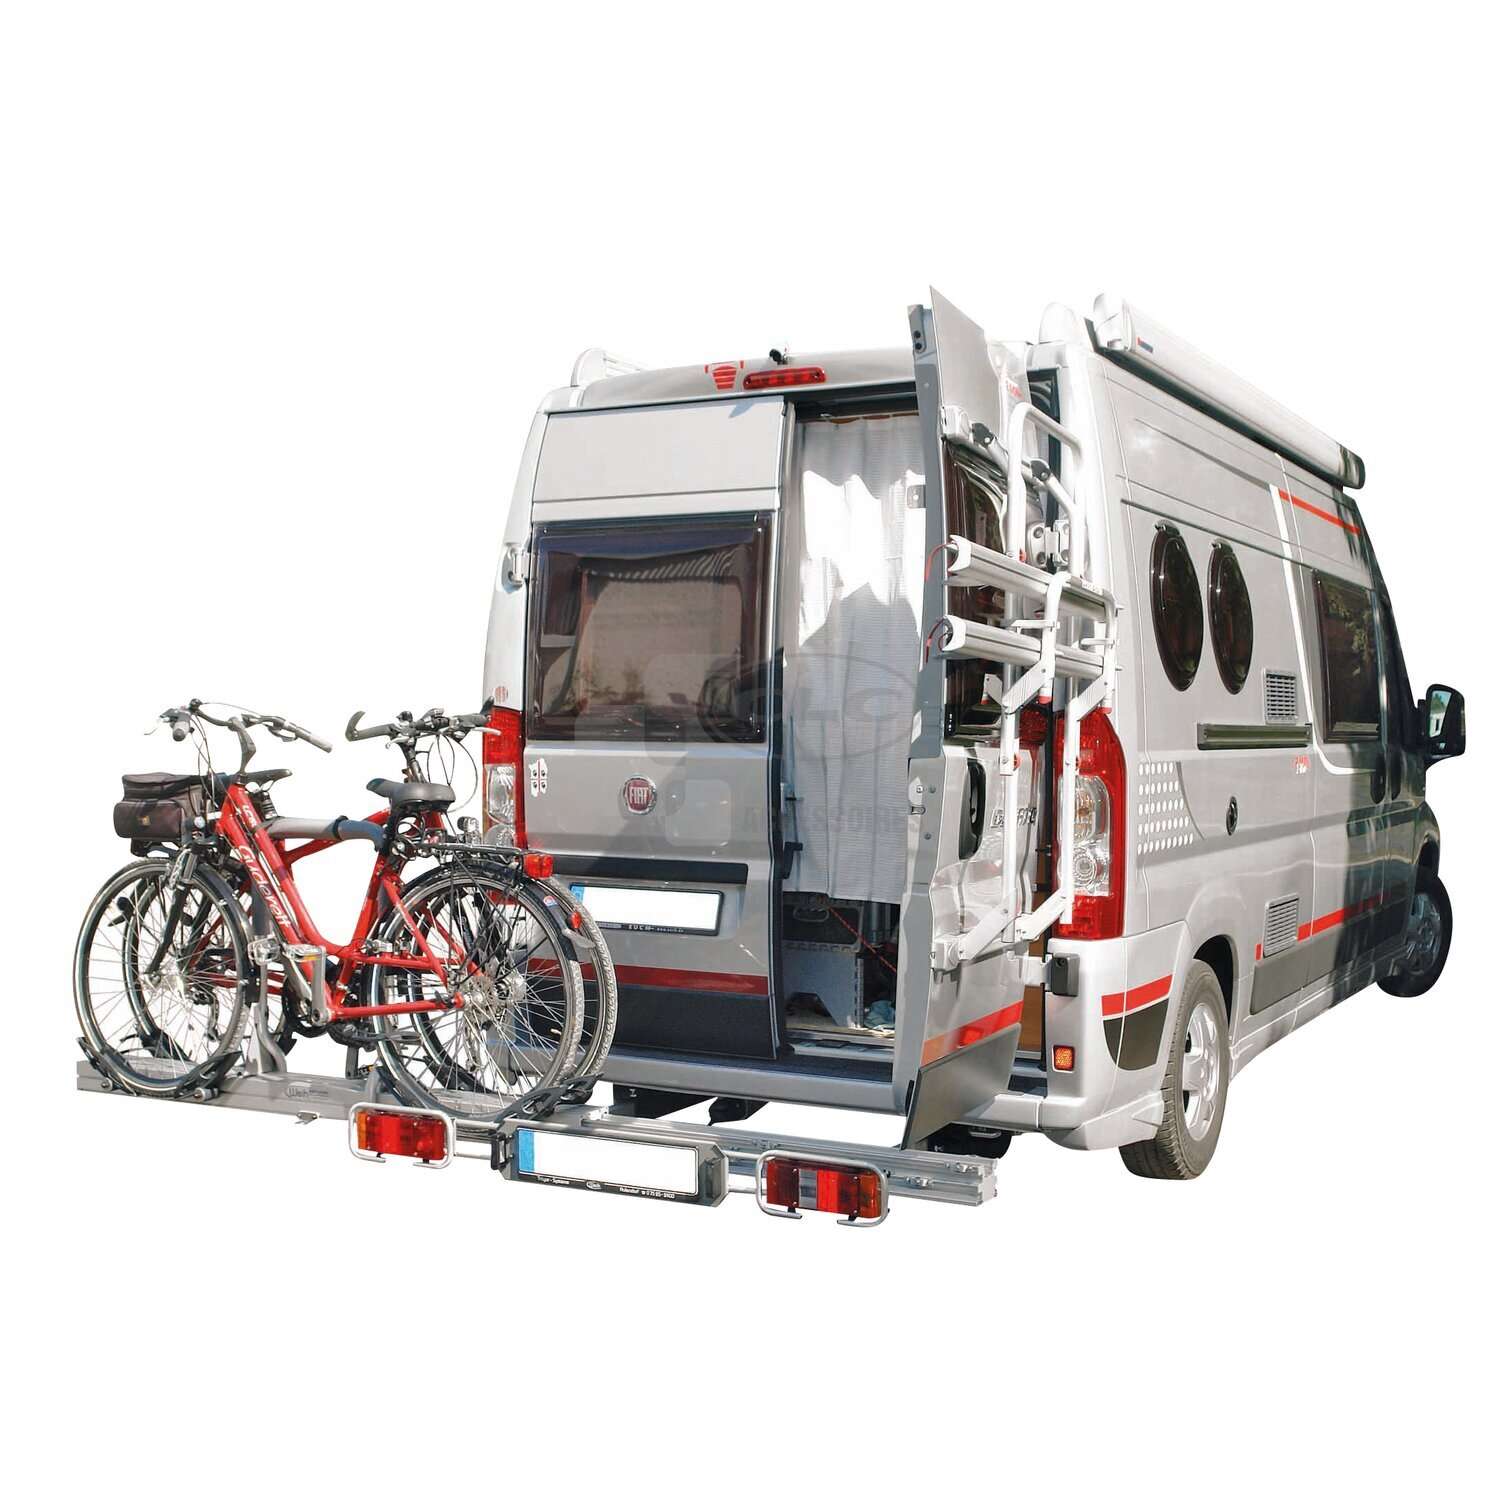 LINNEPE Porte-vélo hayon GiROVAN pour camping-car, fourgon aménagé, Porte- vélo électrique E-Bike pour camping-car, Porte-moto camping-car et porte- vélo hayon, Accessoires Camping-car